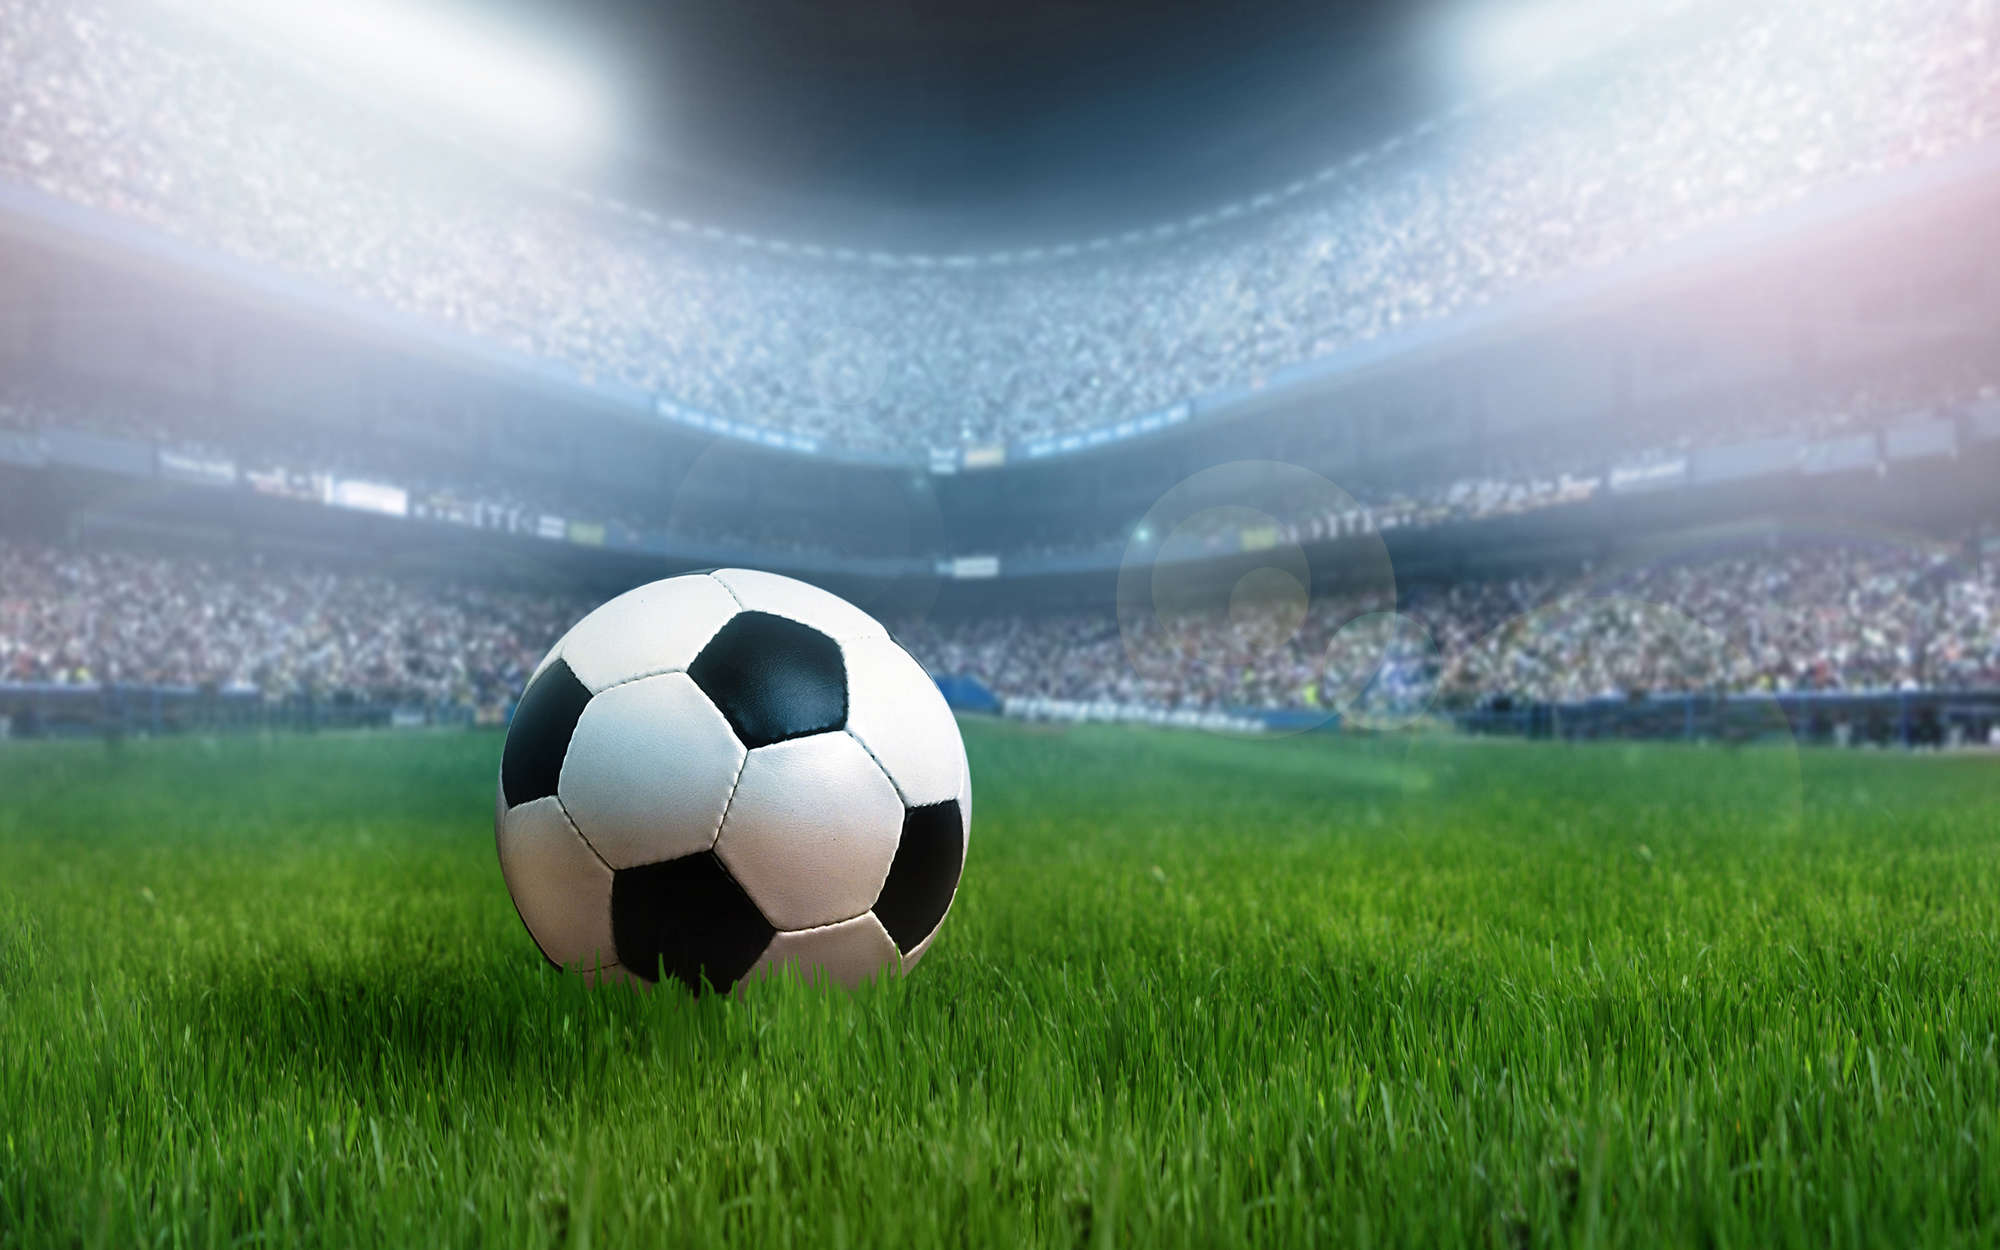             Fototapete Fußball-Arena mit Ball – Strukturiertes Vlies
        